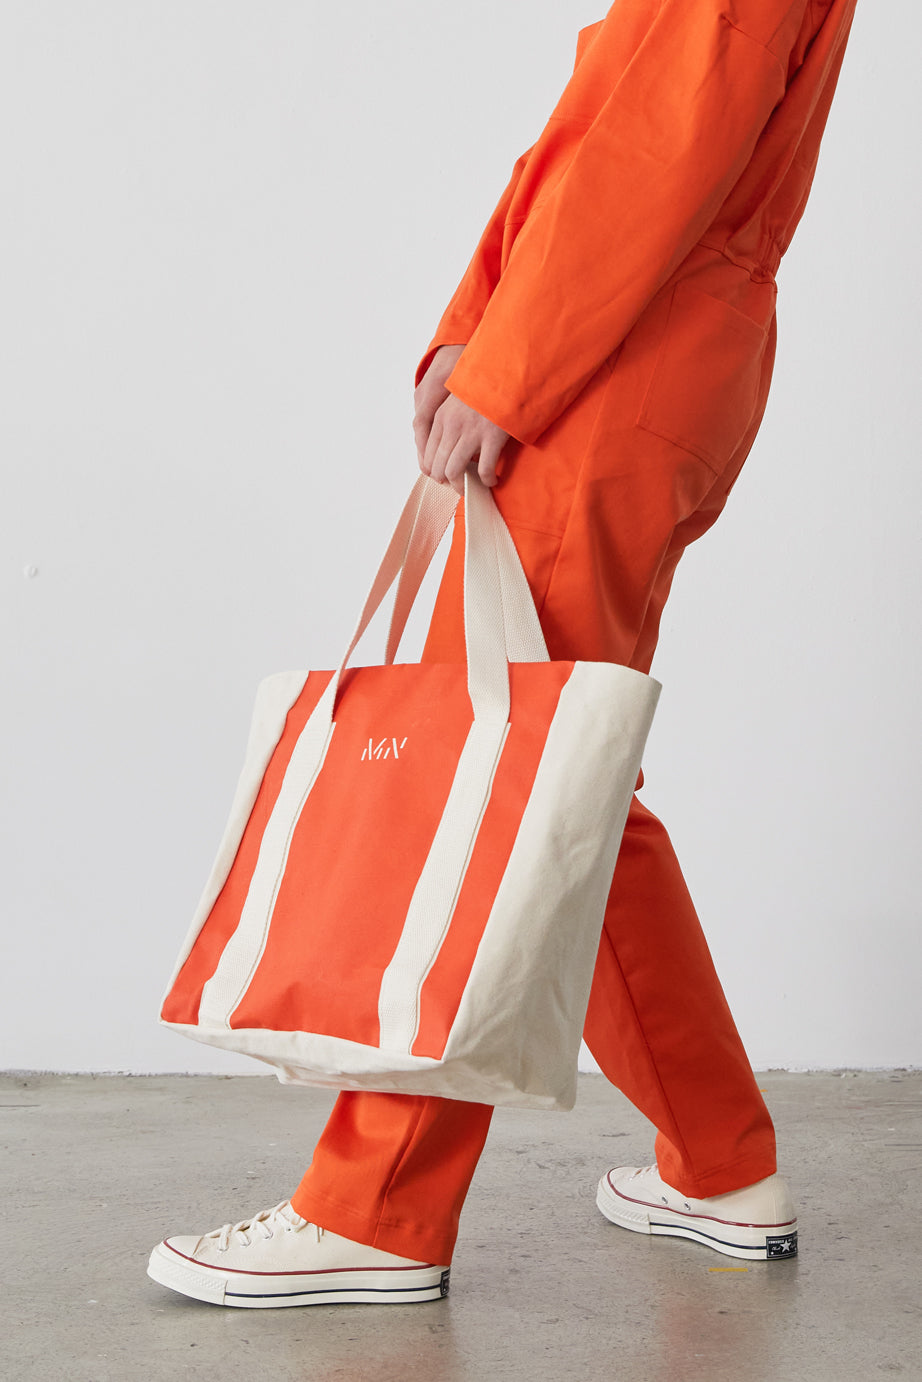 M.N Orange Market Bag